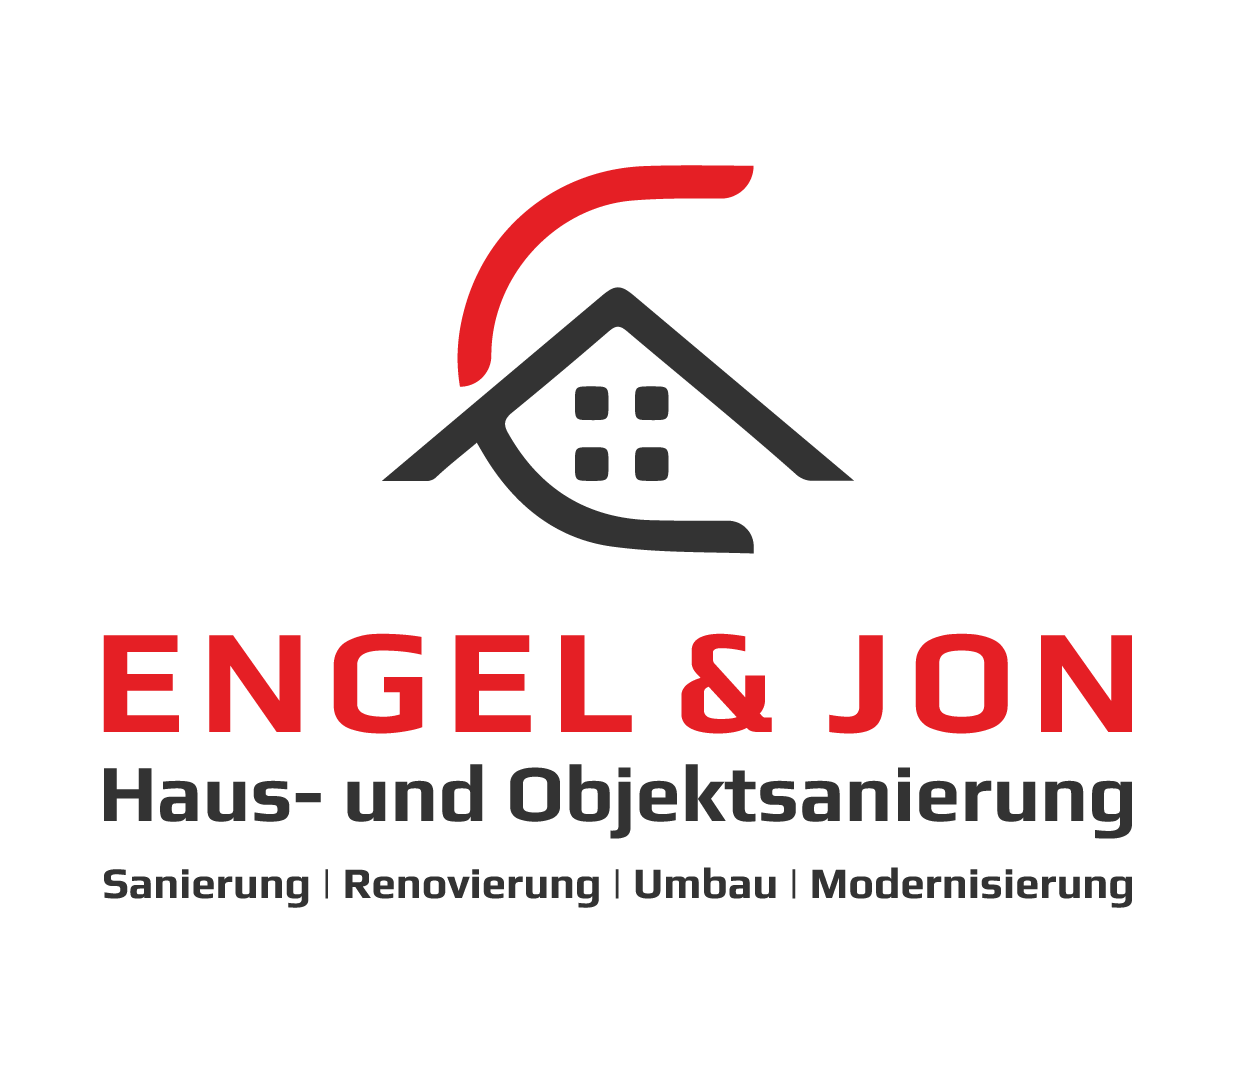 Engel & Jon Haus- und Objektsanierung